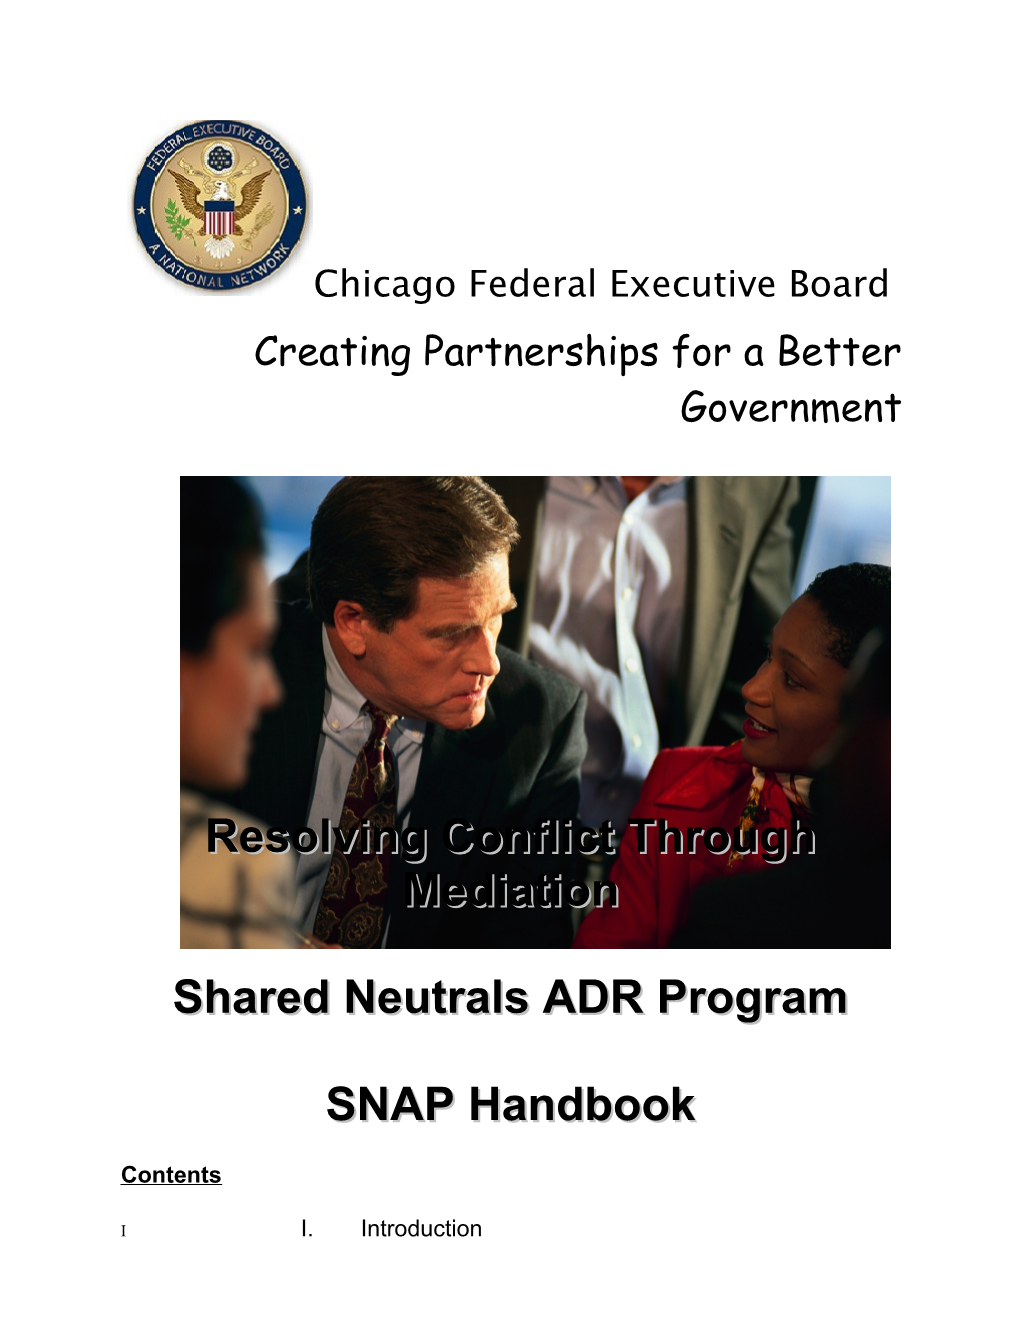 Shared Neutrals ADR Program Handbook: SNAP